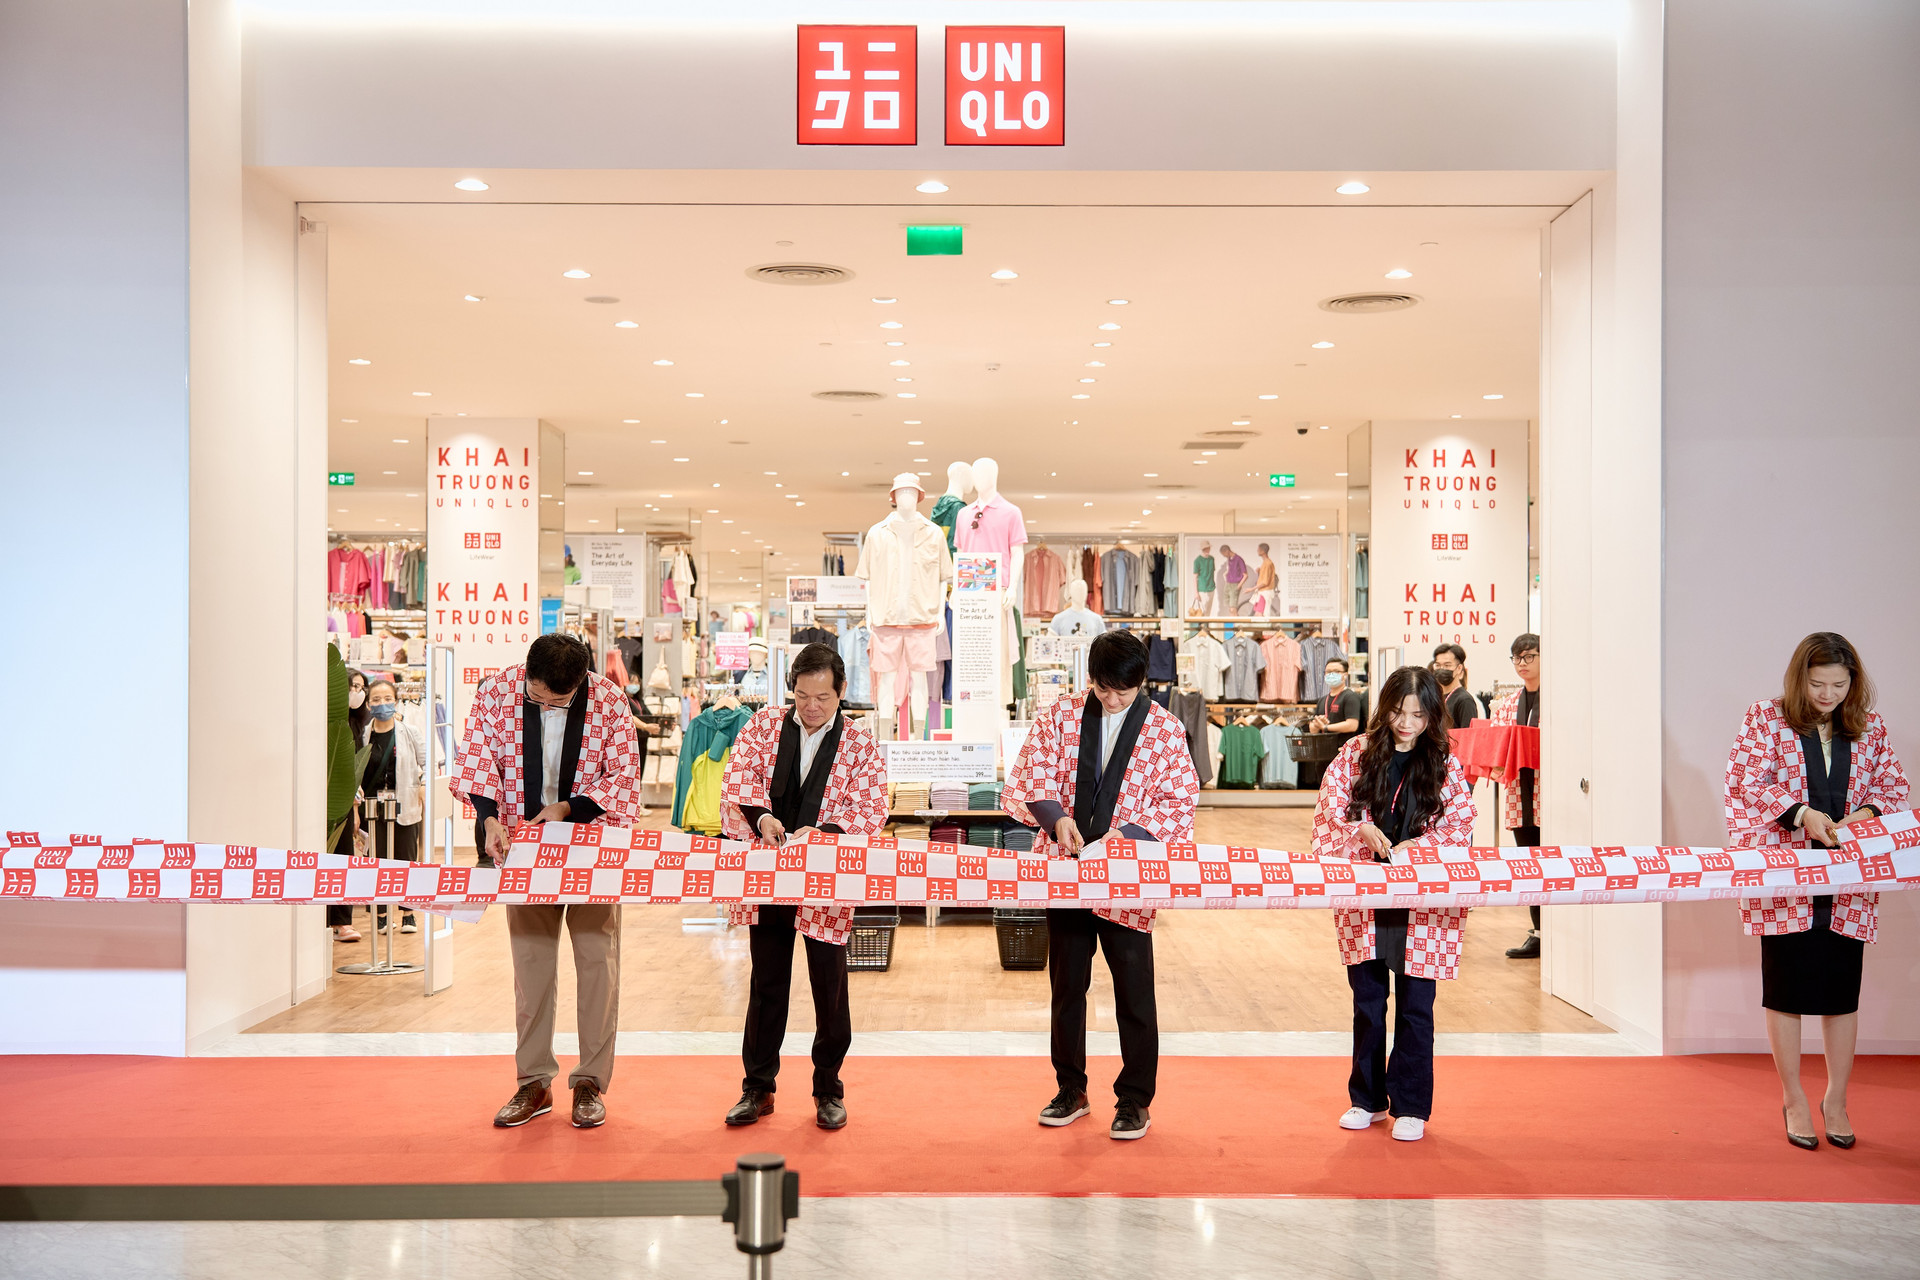 Lần đầu tiên tại Việt Nam Uniqlo mở cửa hàng Special Large tại trung tâm  thương mại sầm uất nhất Sài thành